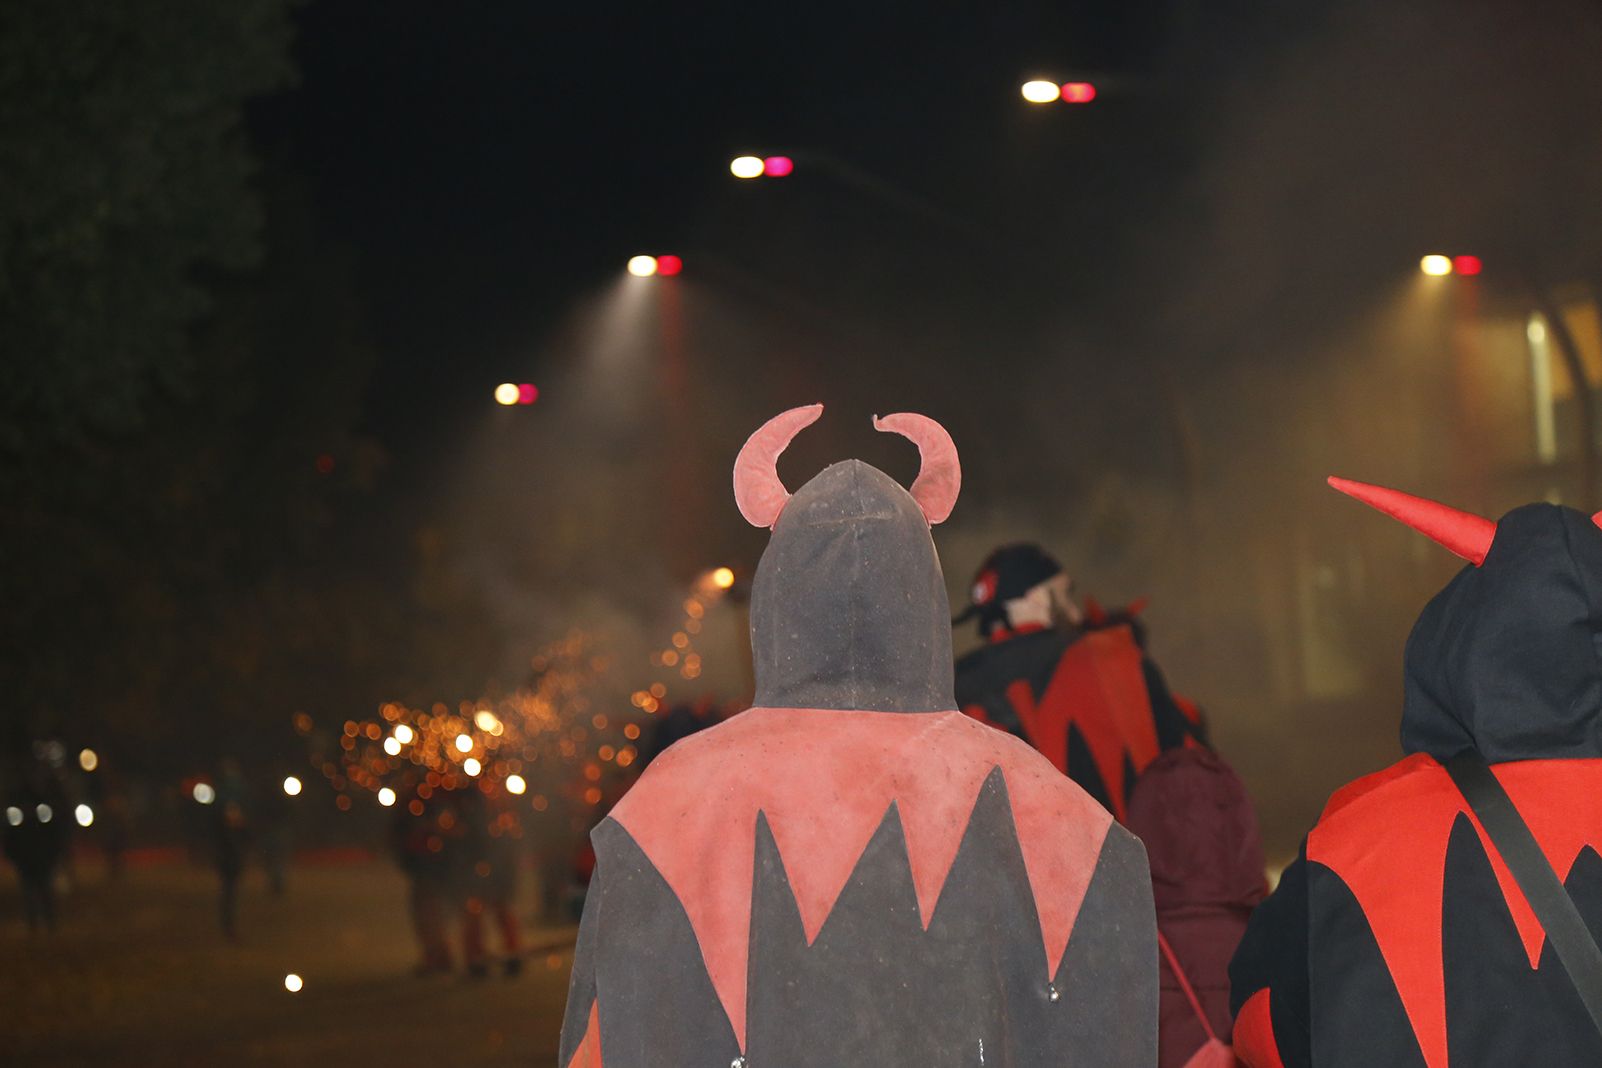 Intervenció dels Diables a la Rua tabucaire pels carrers de Sant Cugat. FOTO: Anna Bassa